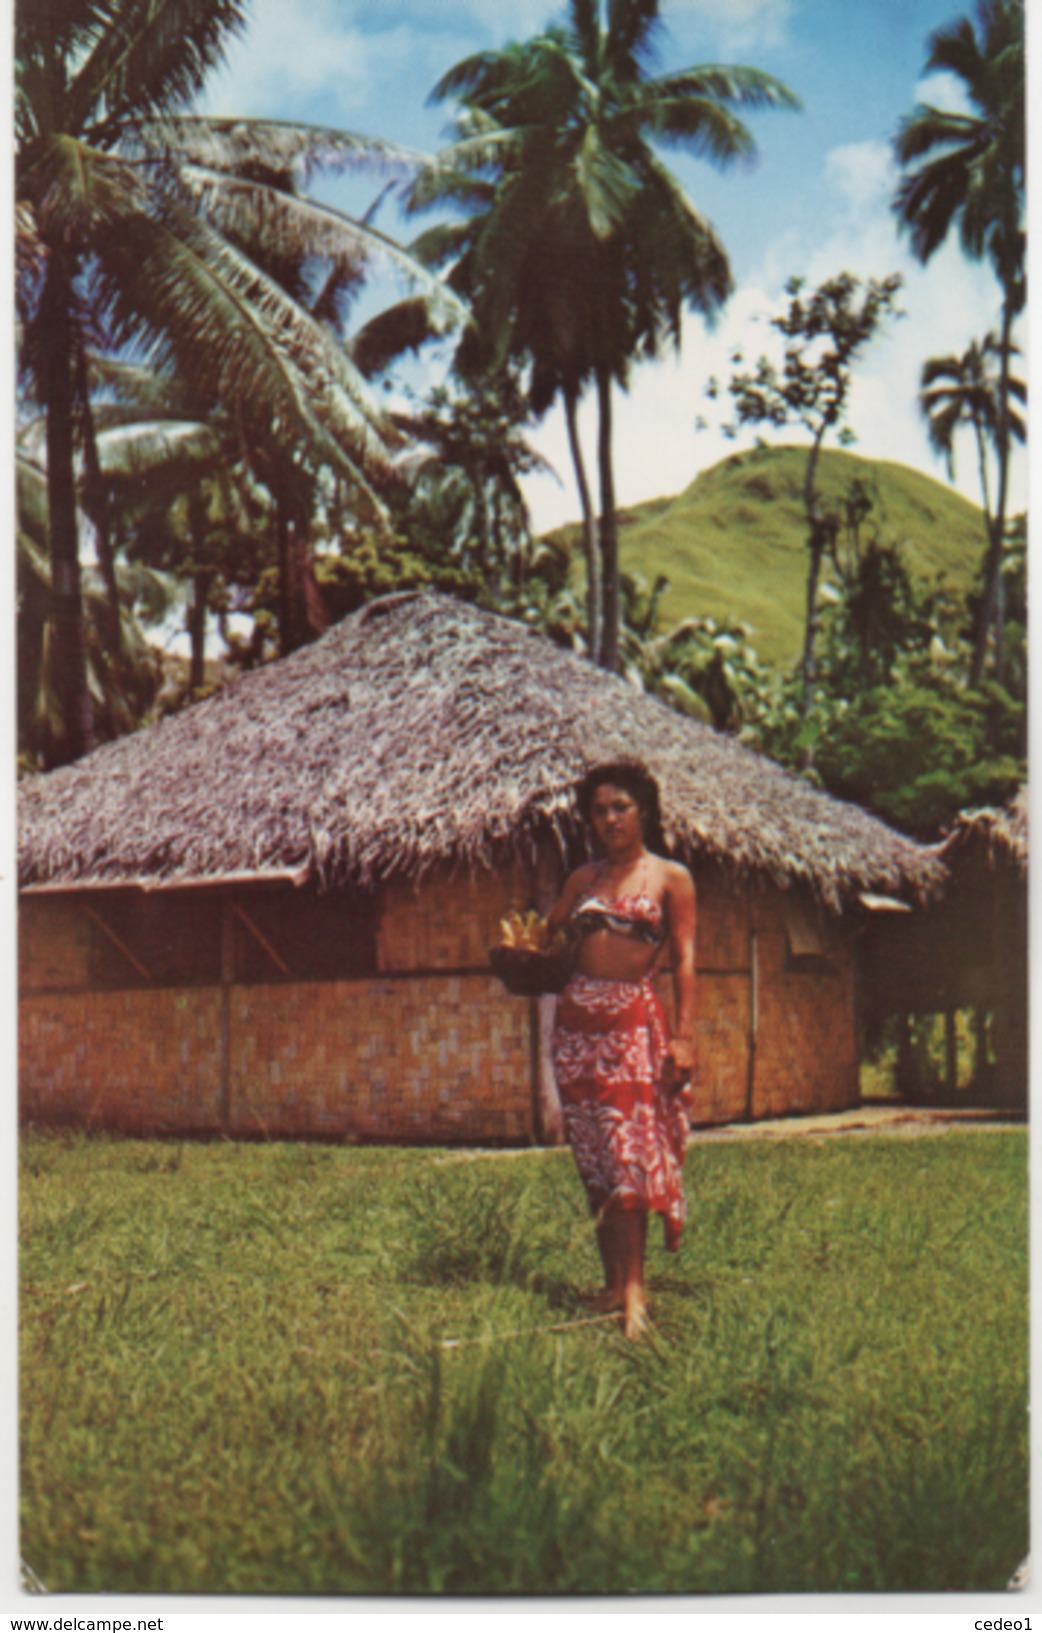 JEUNNE TAHITIENNE - Polynésie Française